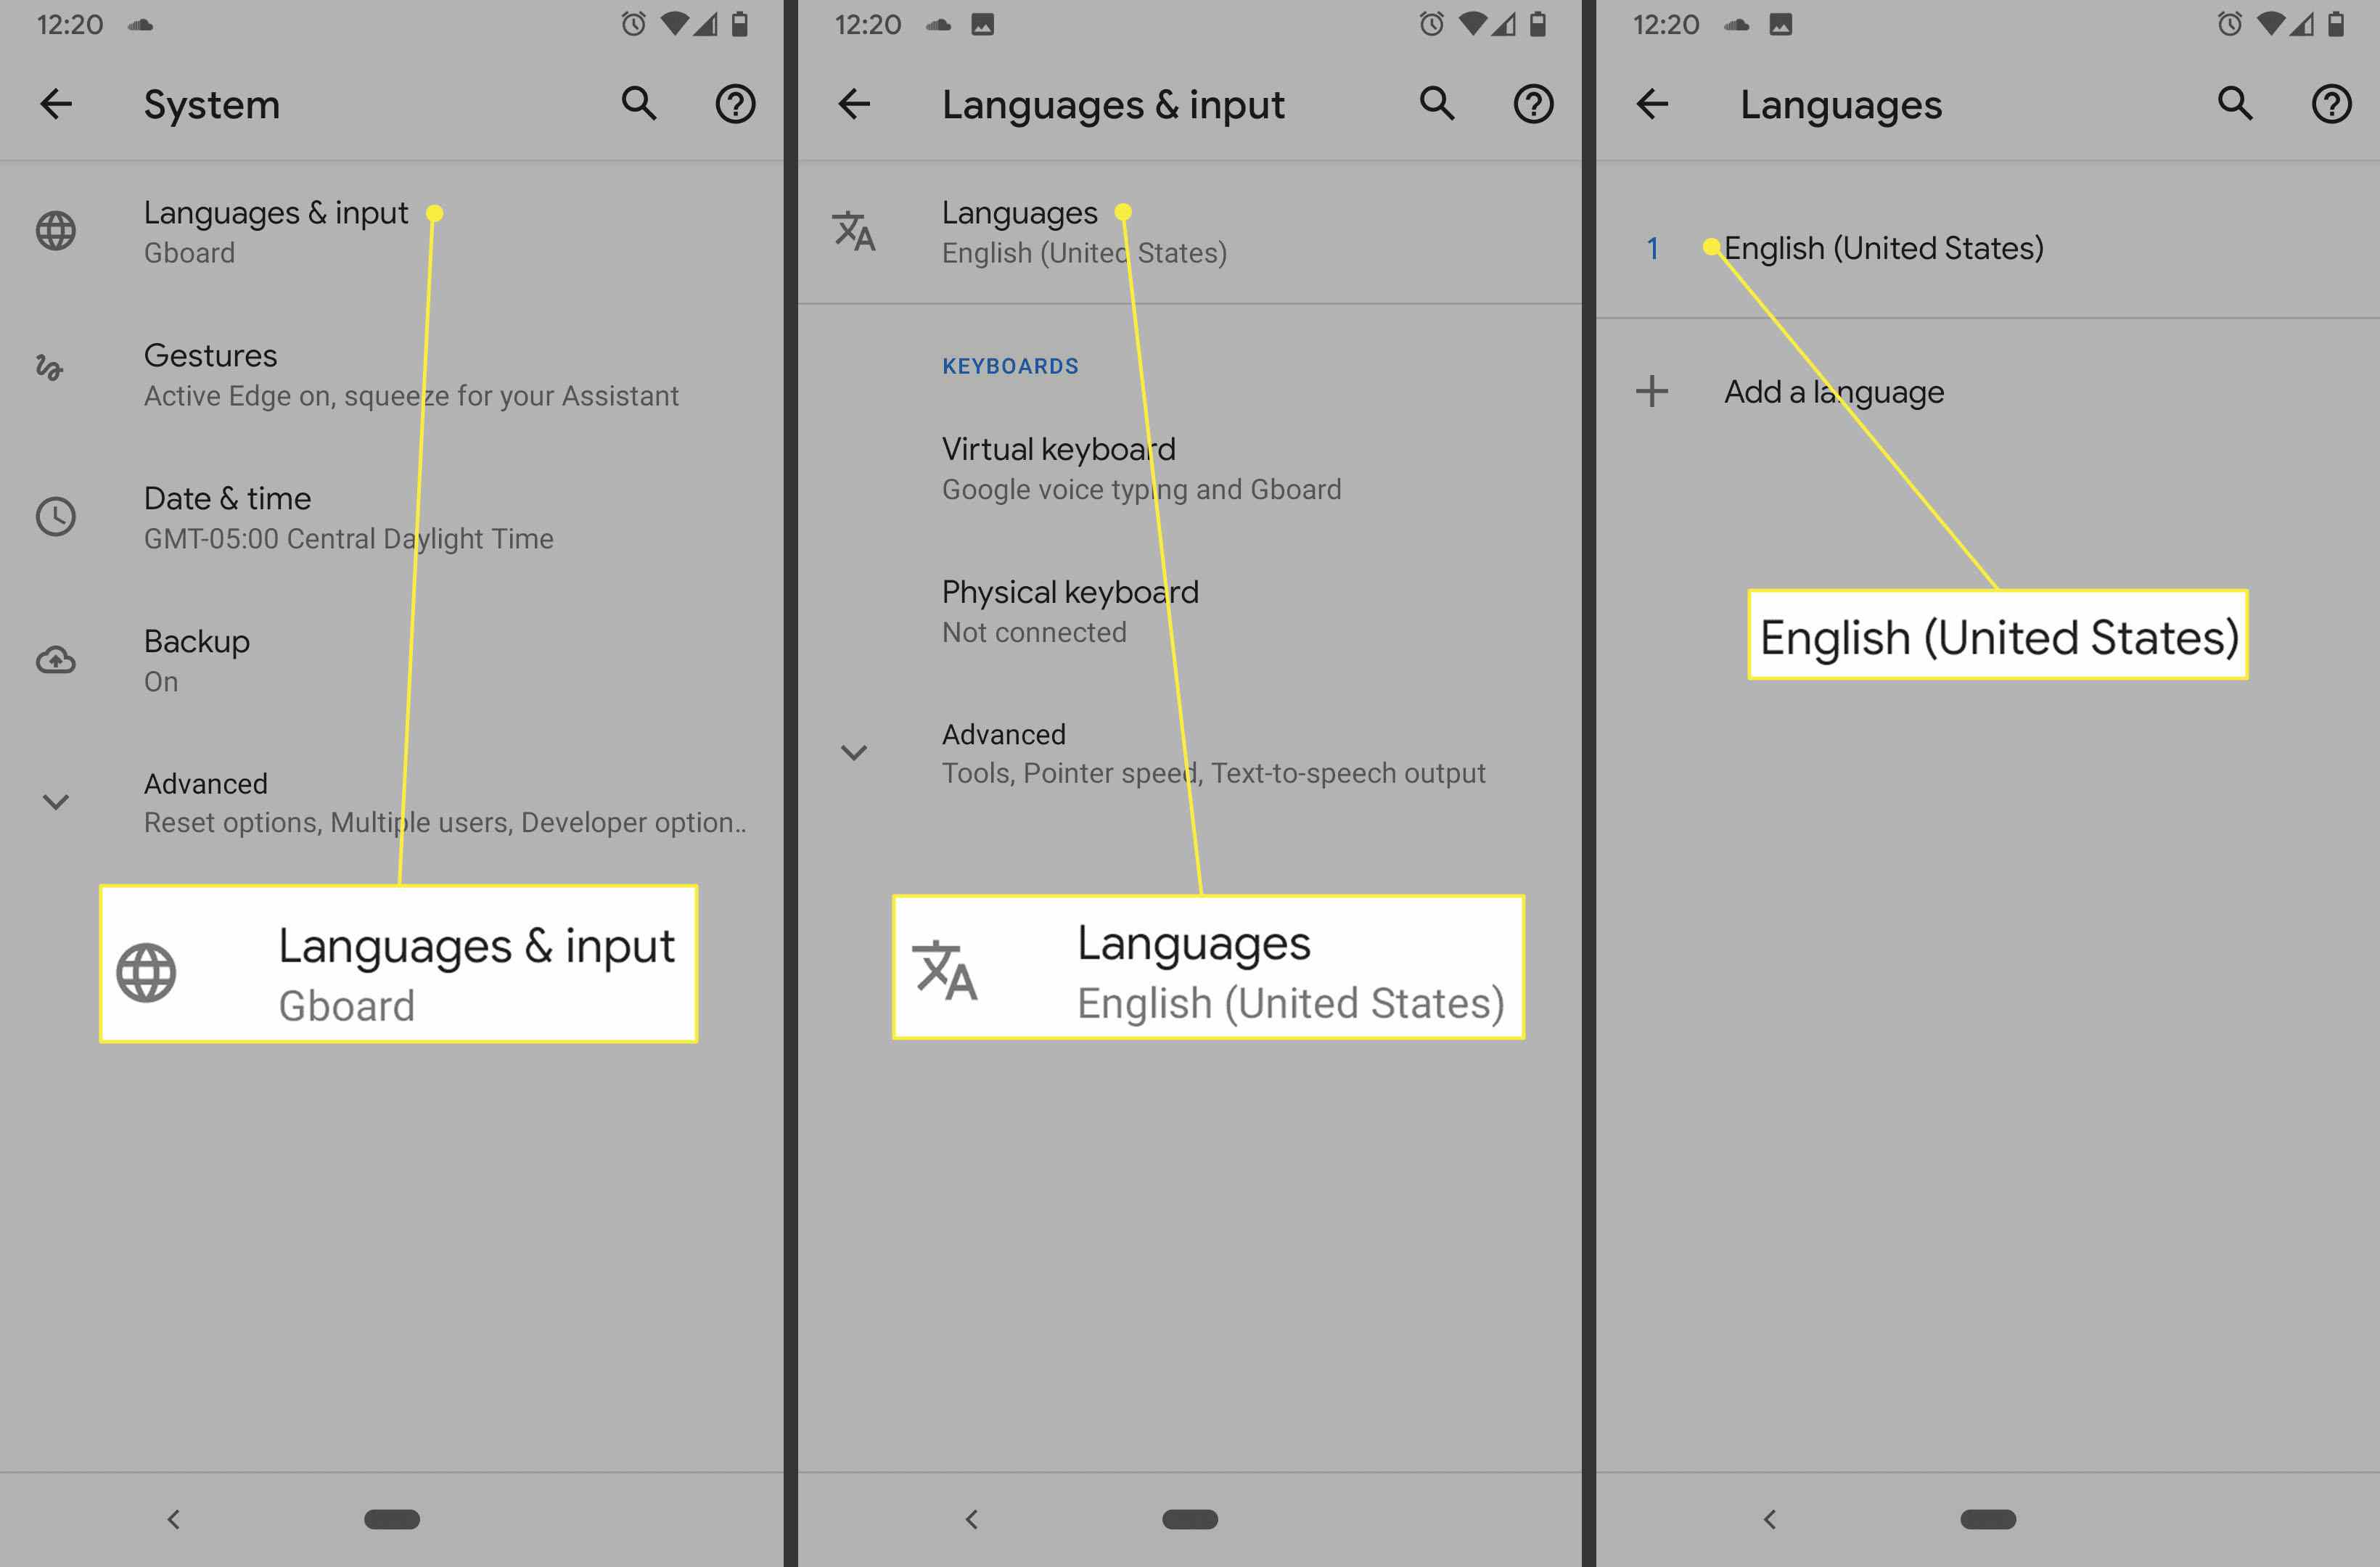 Obrazovky systému Android, jazyků a vstupu a jazyků.